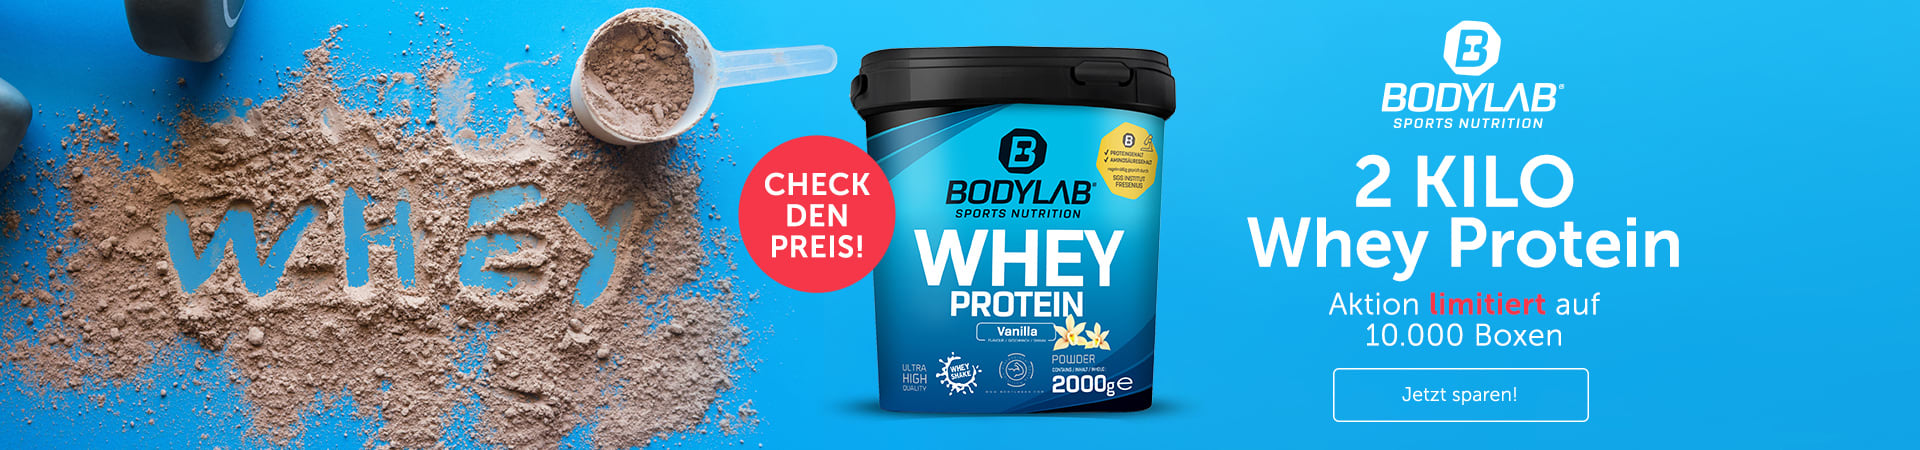 Bodylab Whey Protein 2kg im Angebot